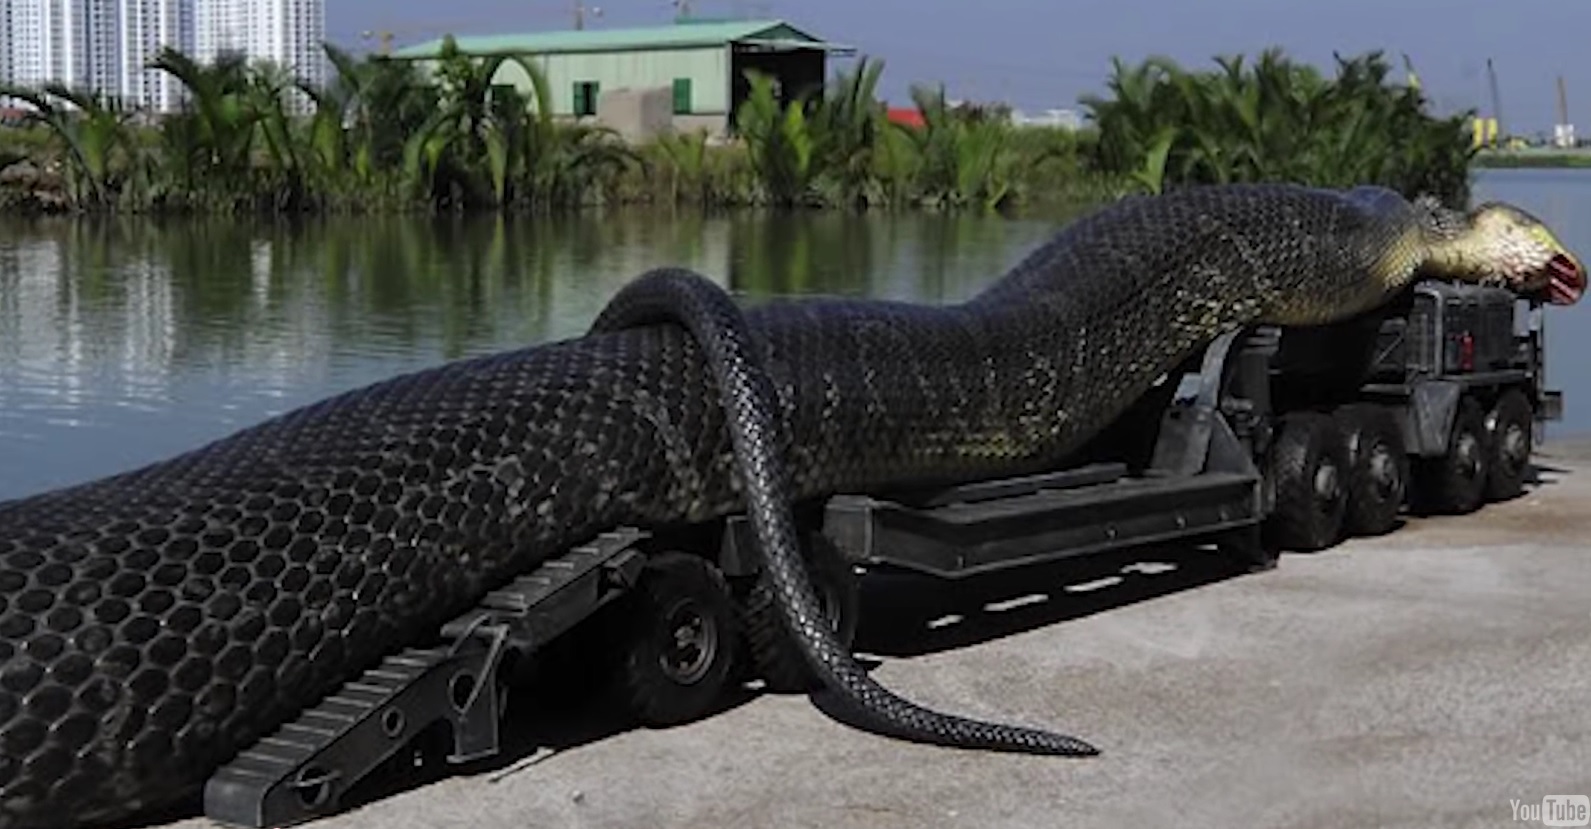 Гигантская анаконда самая большая. Анаконда змея. Анаконда змея самая большая. Самая большая Анаконда 41м. Амазонка река Анаконда.